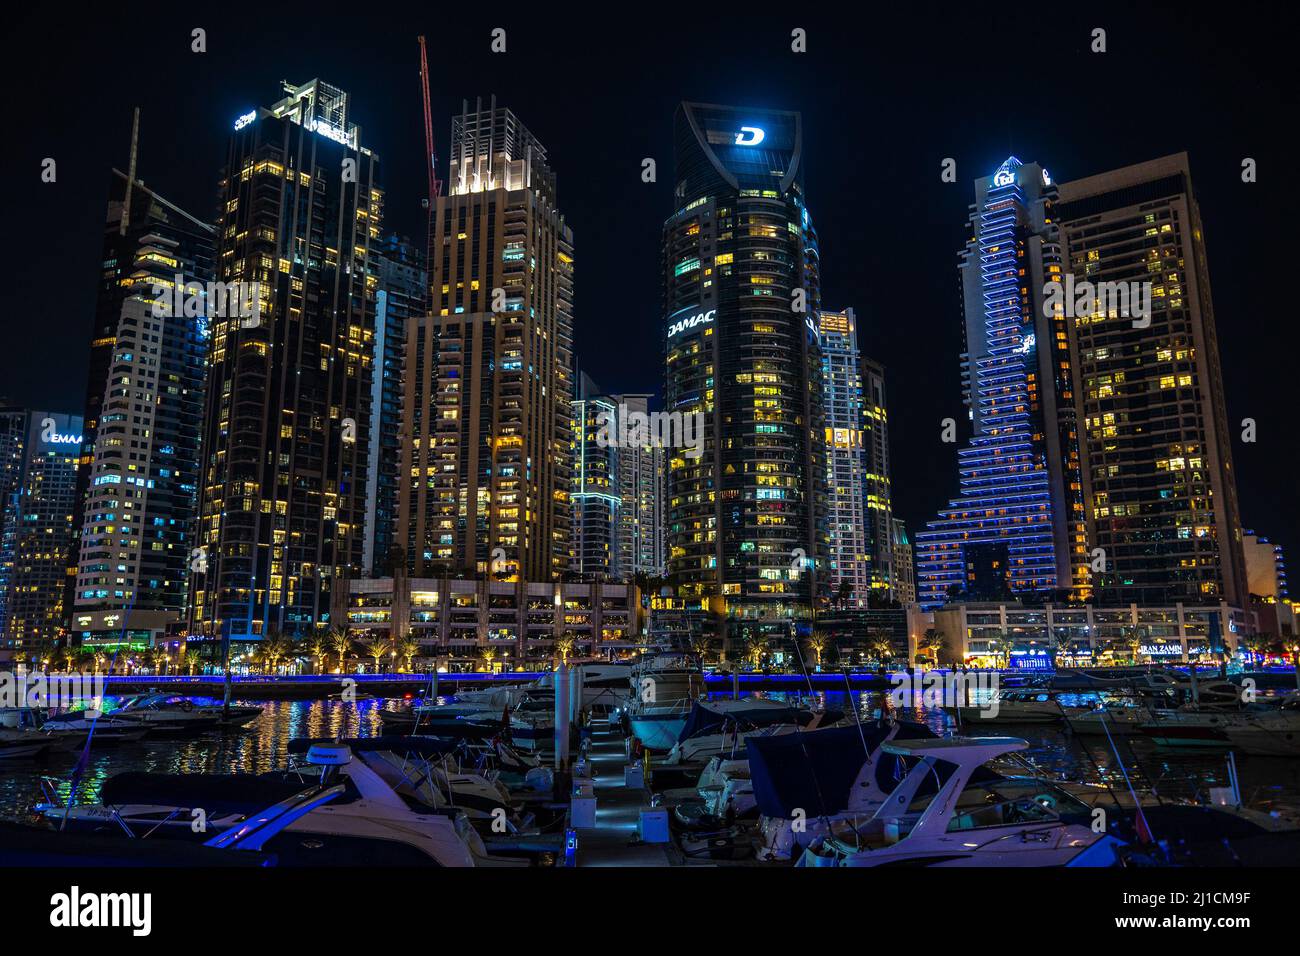 Dubai, EAU - 05 2021 dic: Vista nocturna del puerto deportivo de Dubai y sus rascacielos en construcción Foto de stock